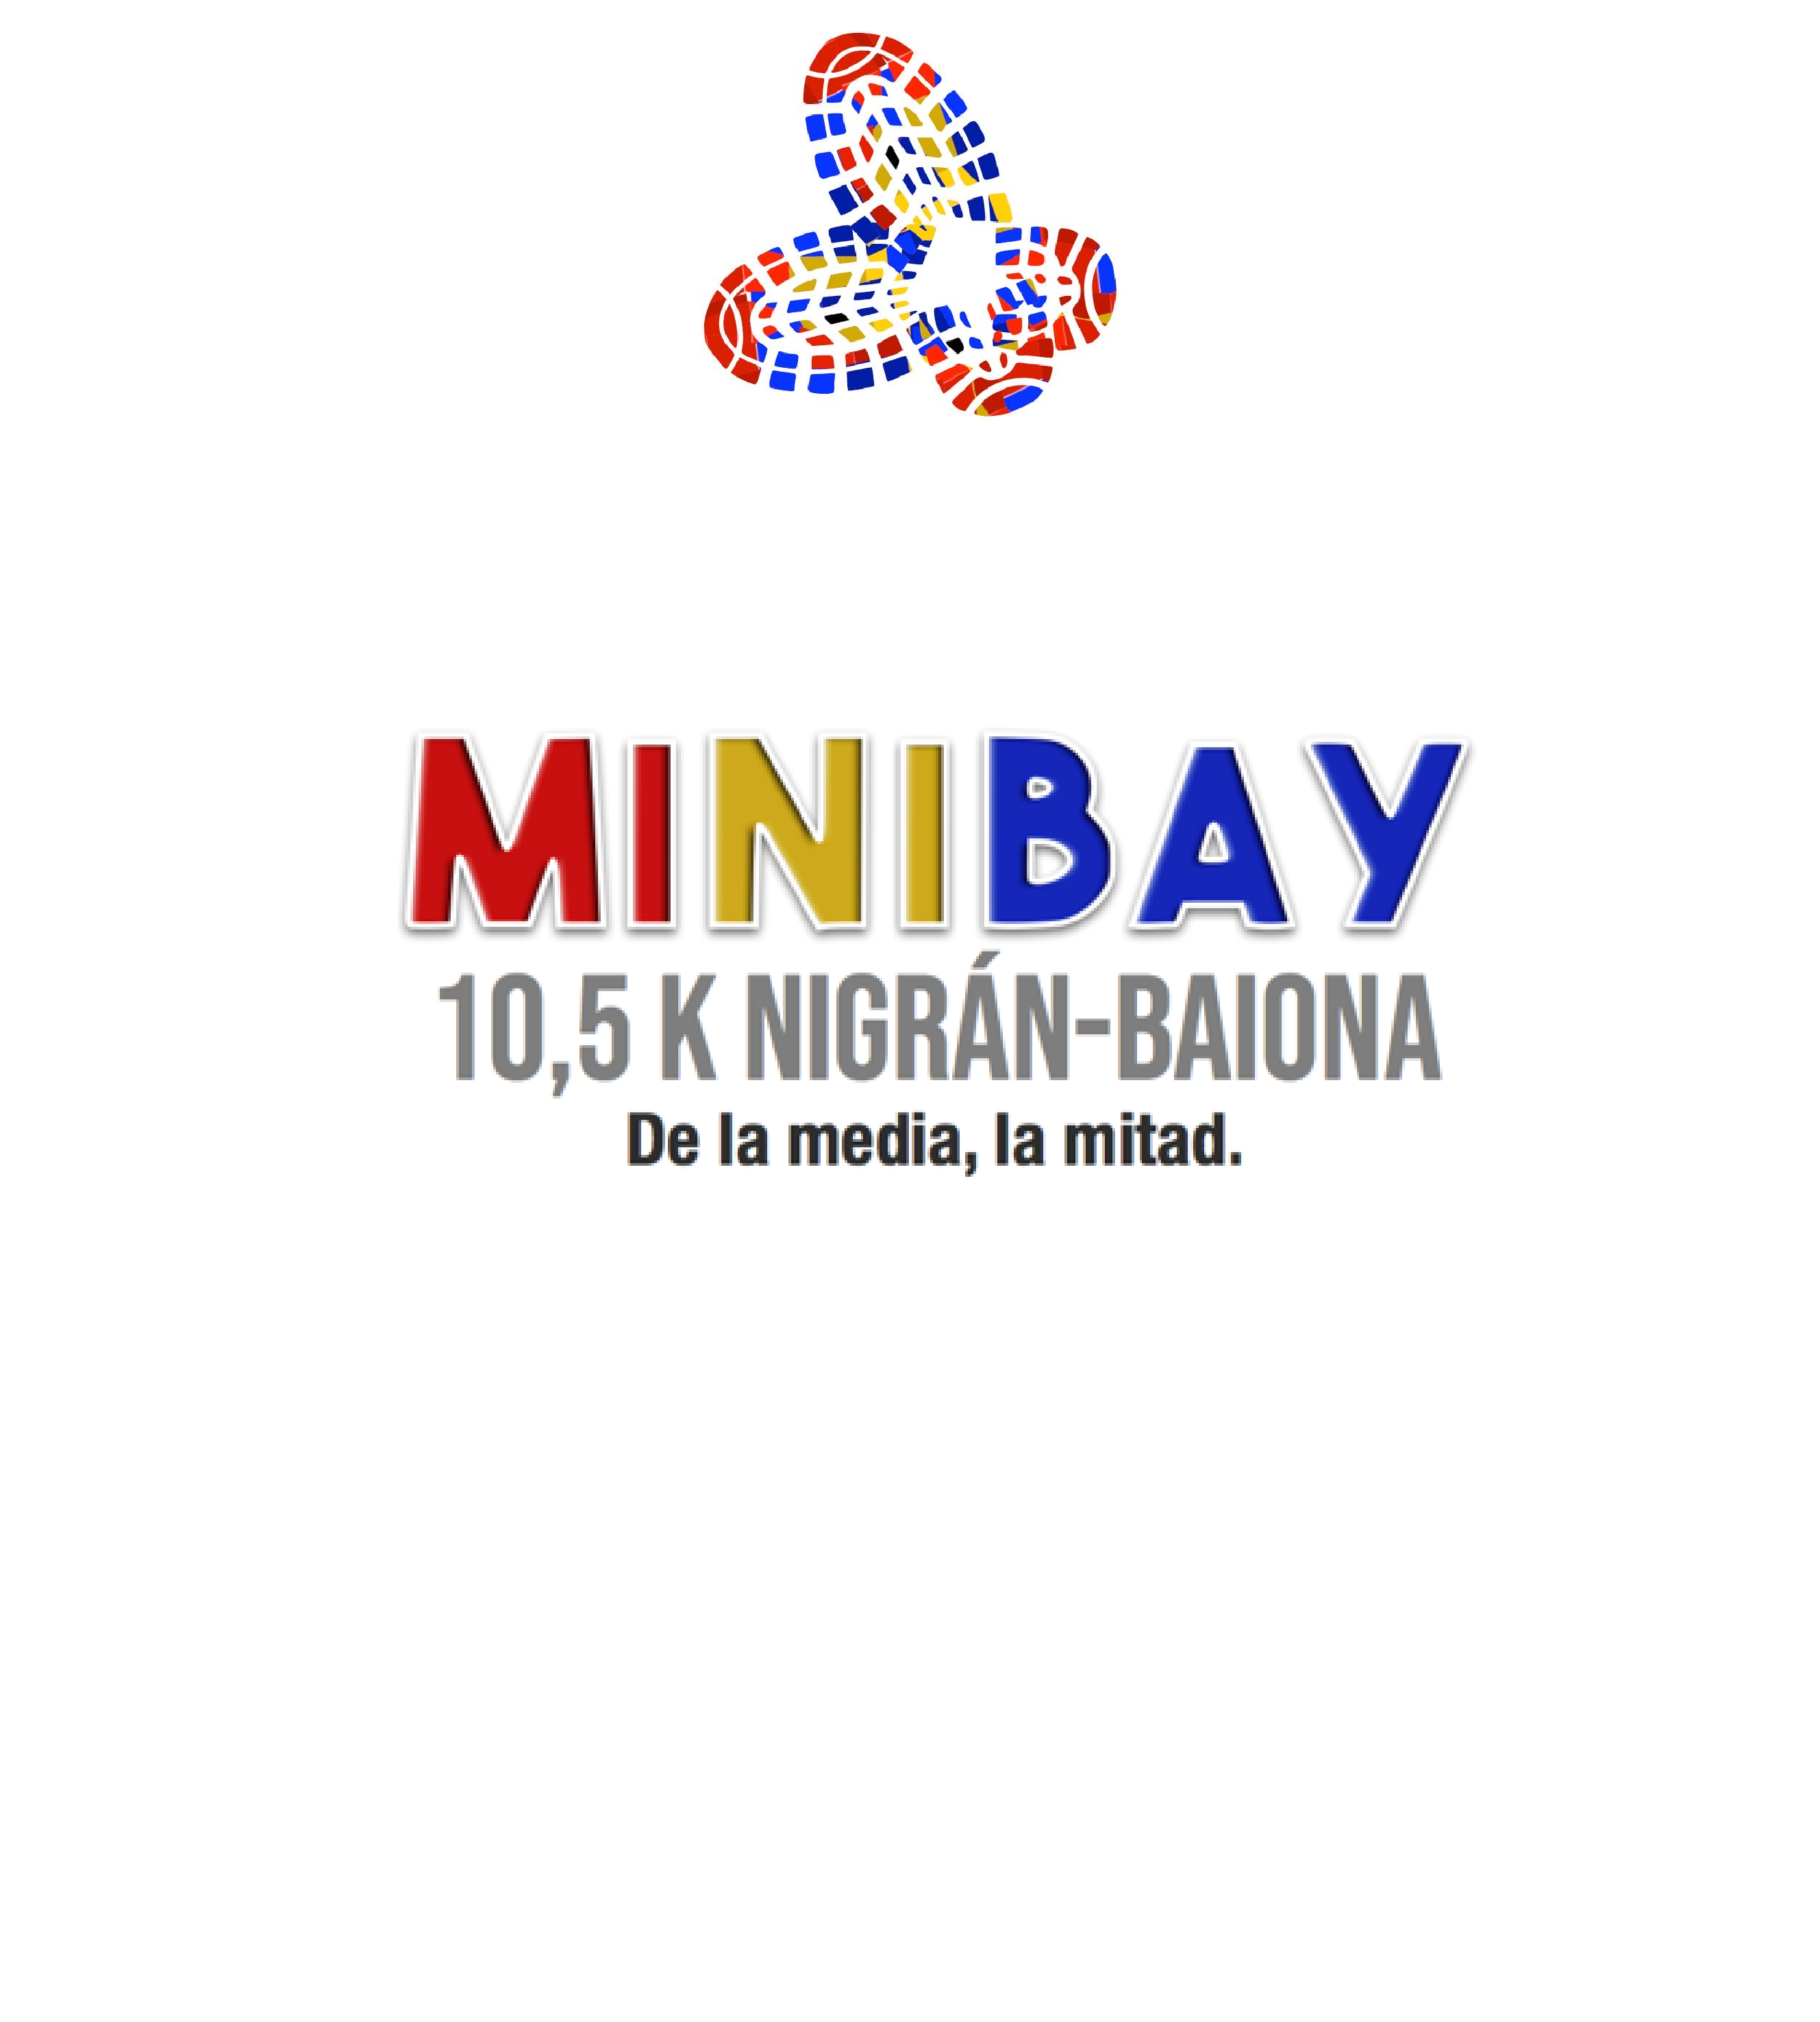  minibay 10:30